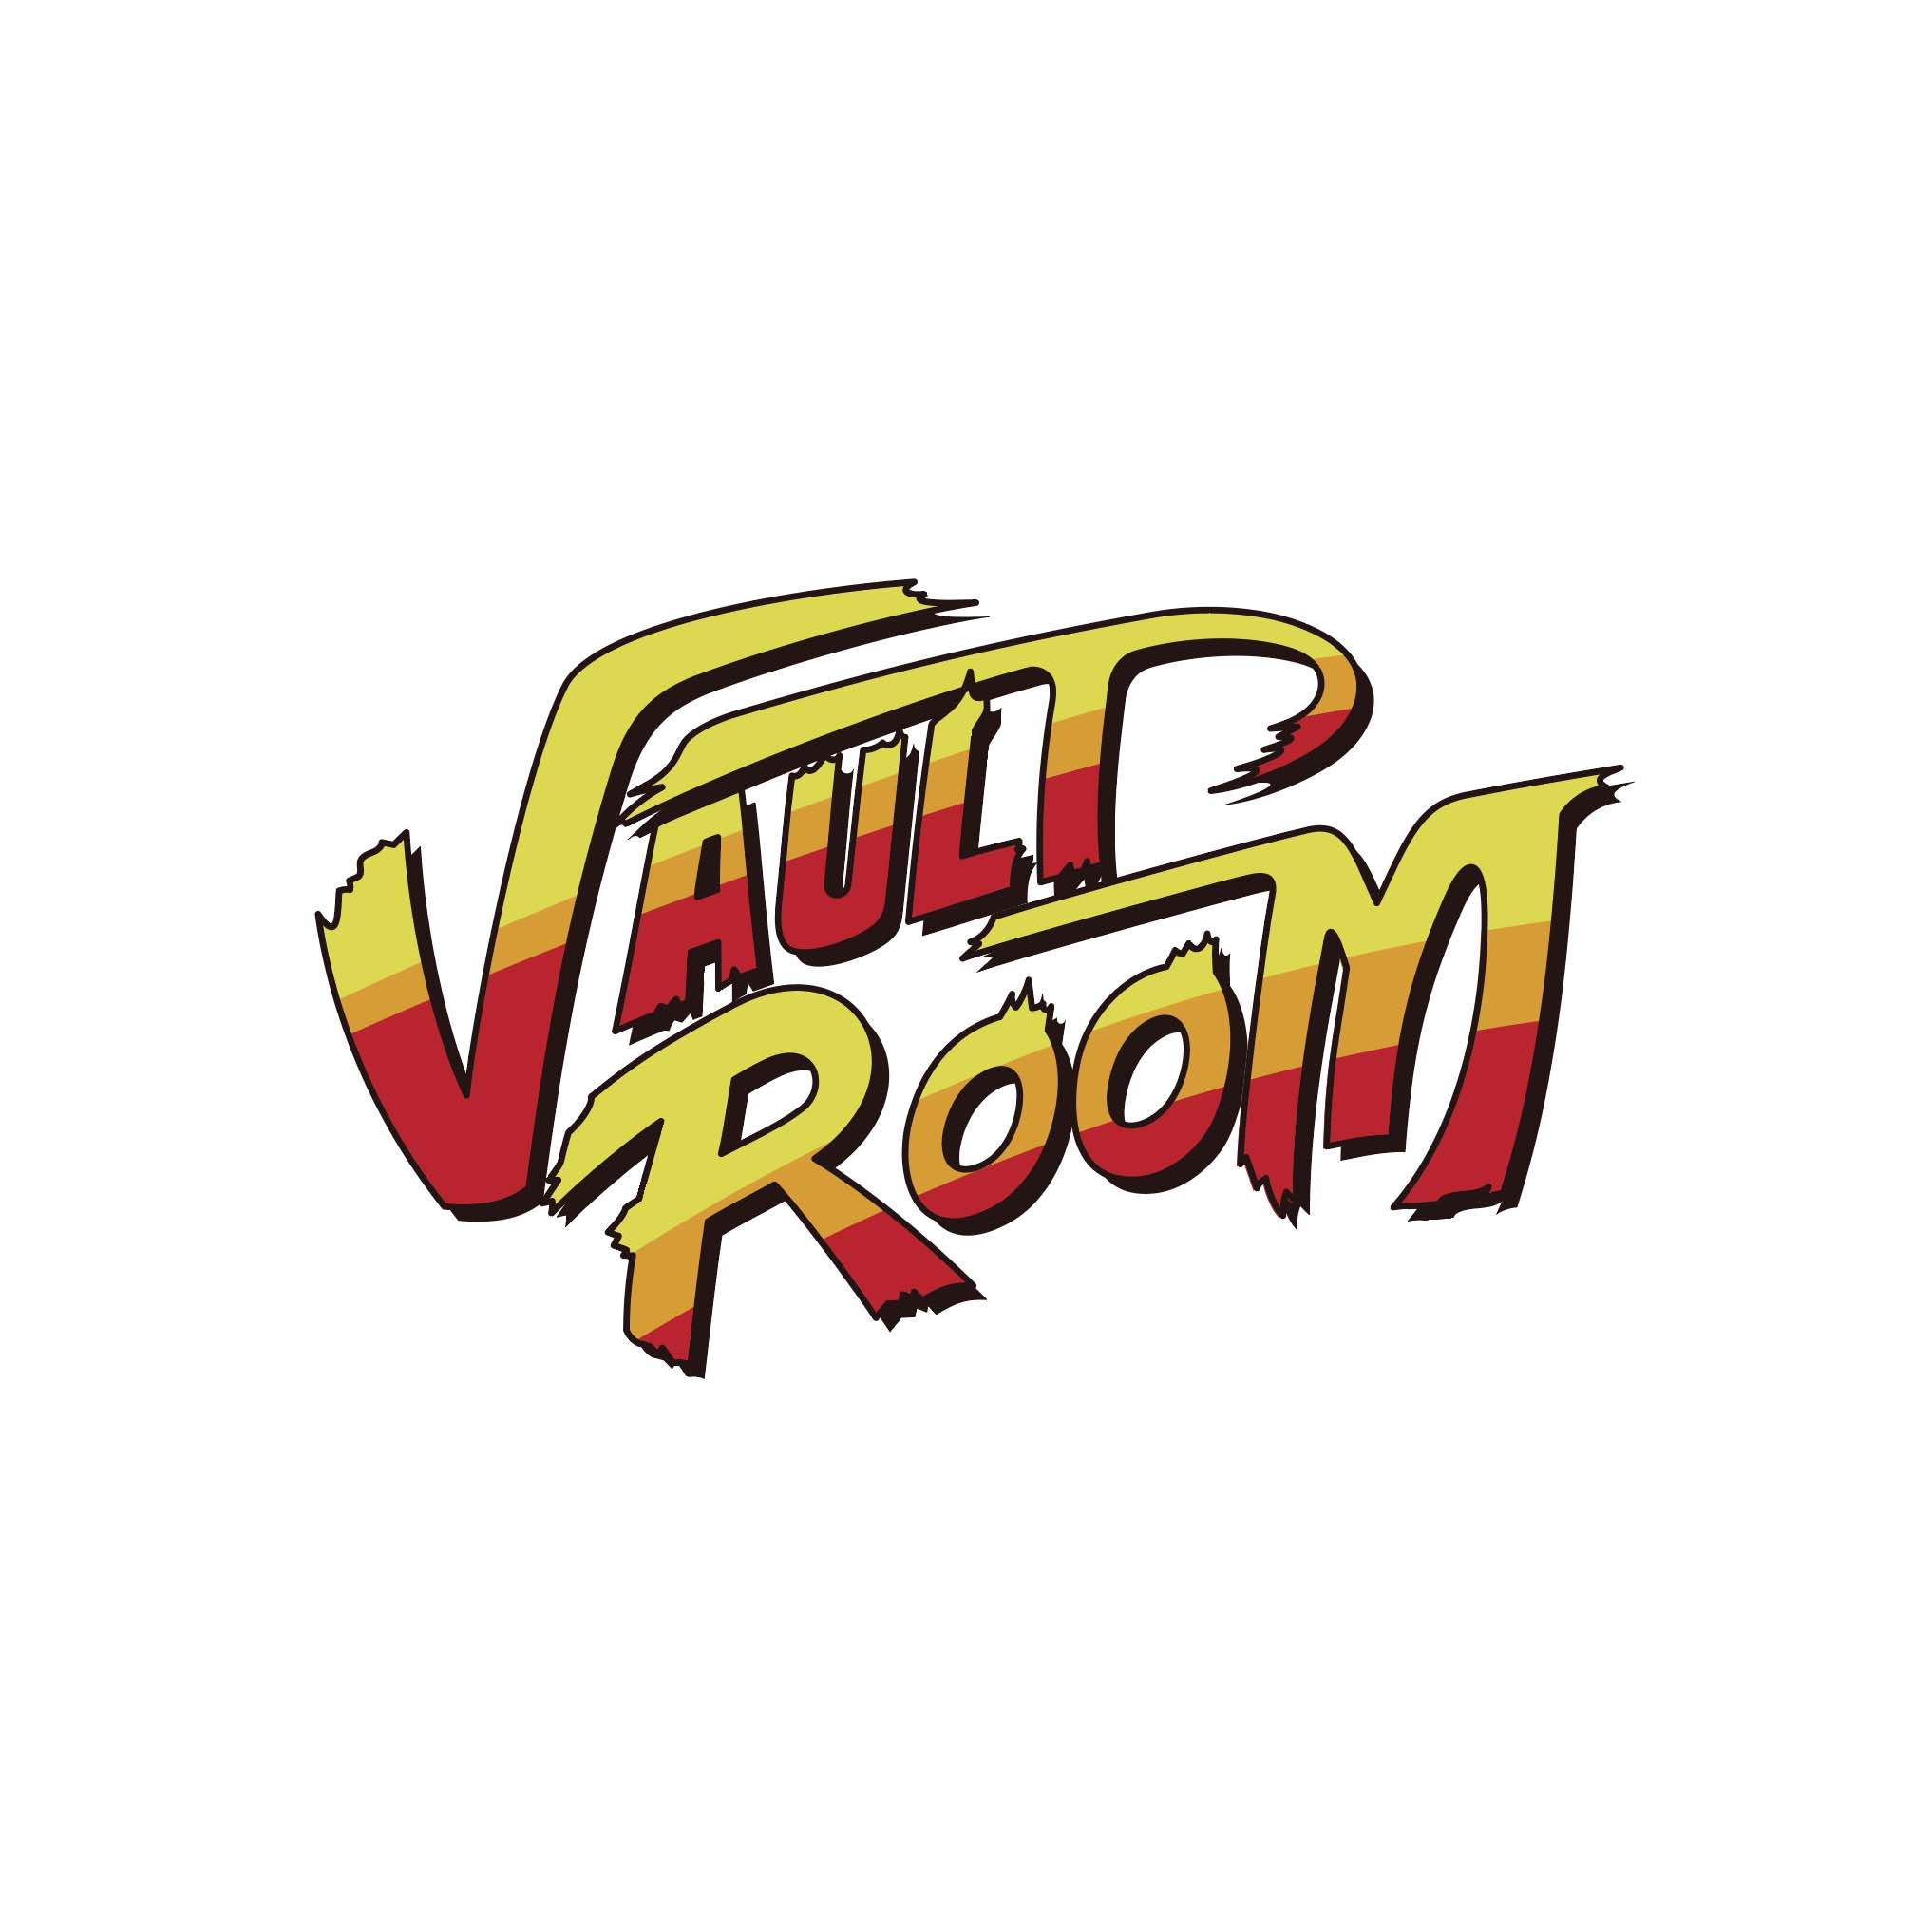 vaultroom × STREET FIGHTER – VAULTROOM